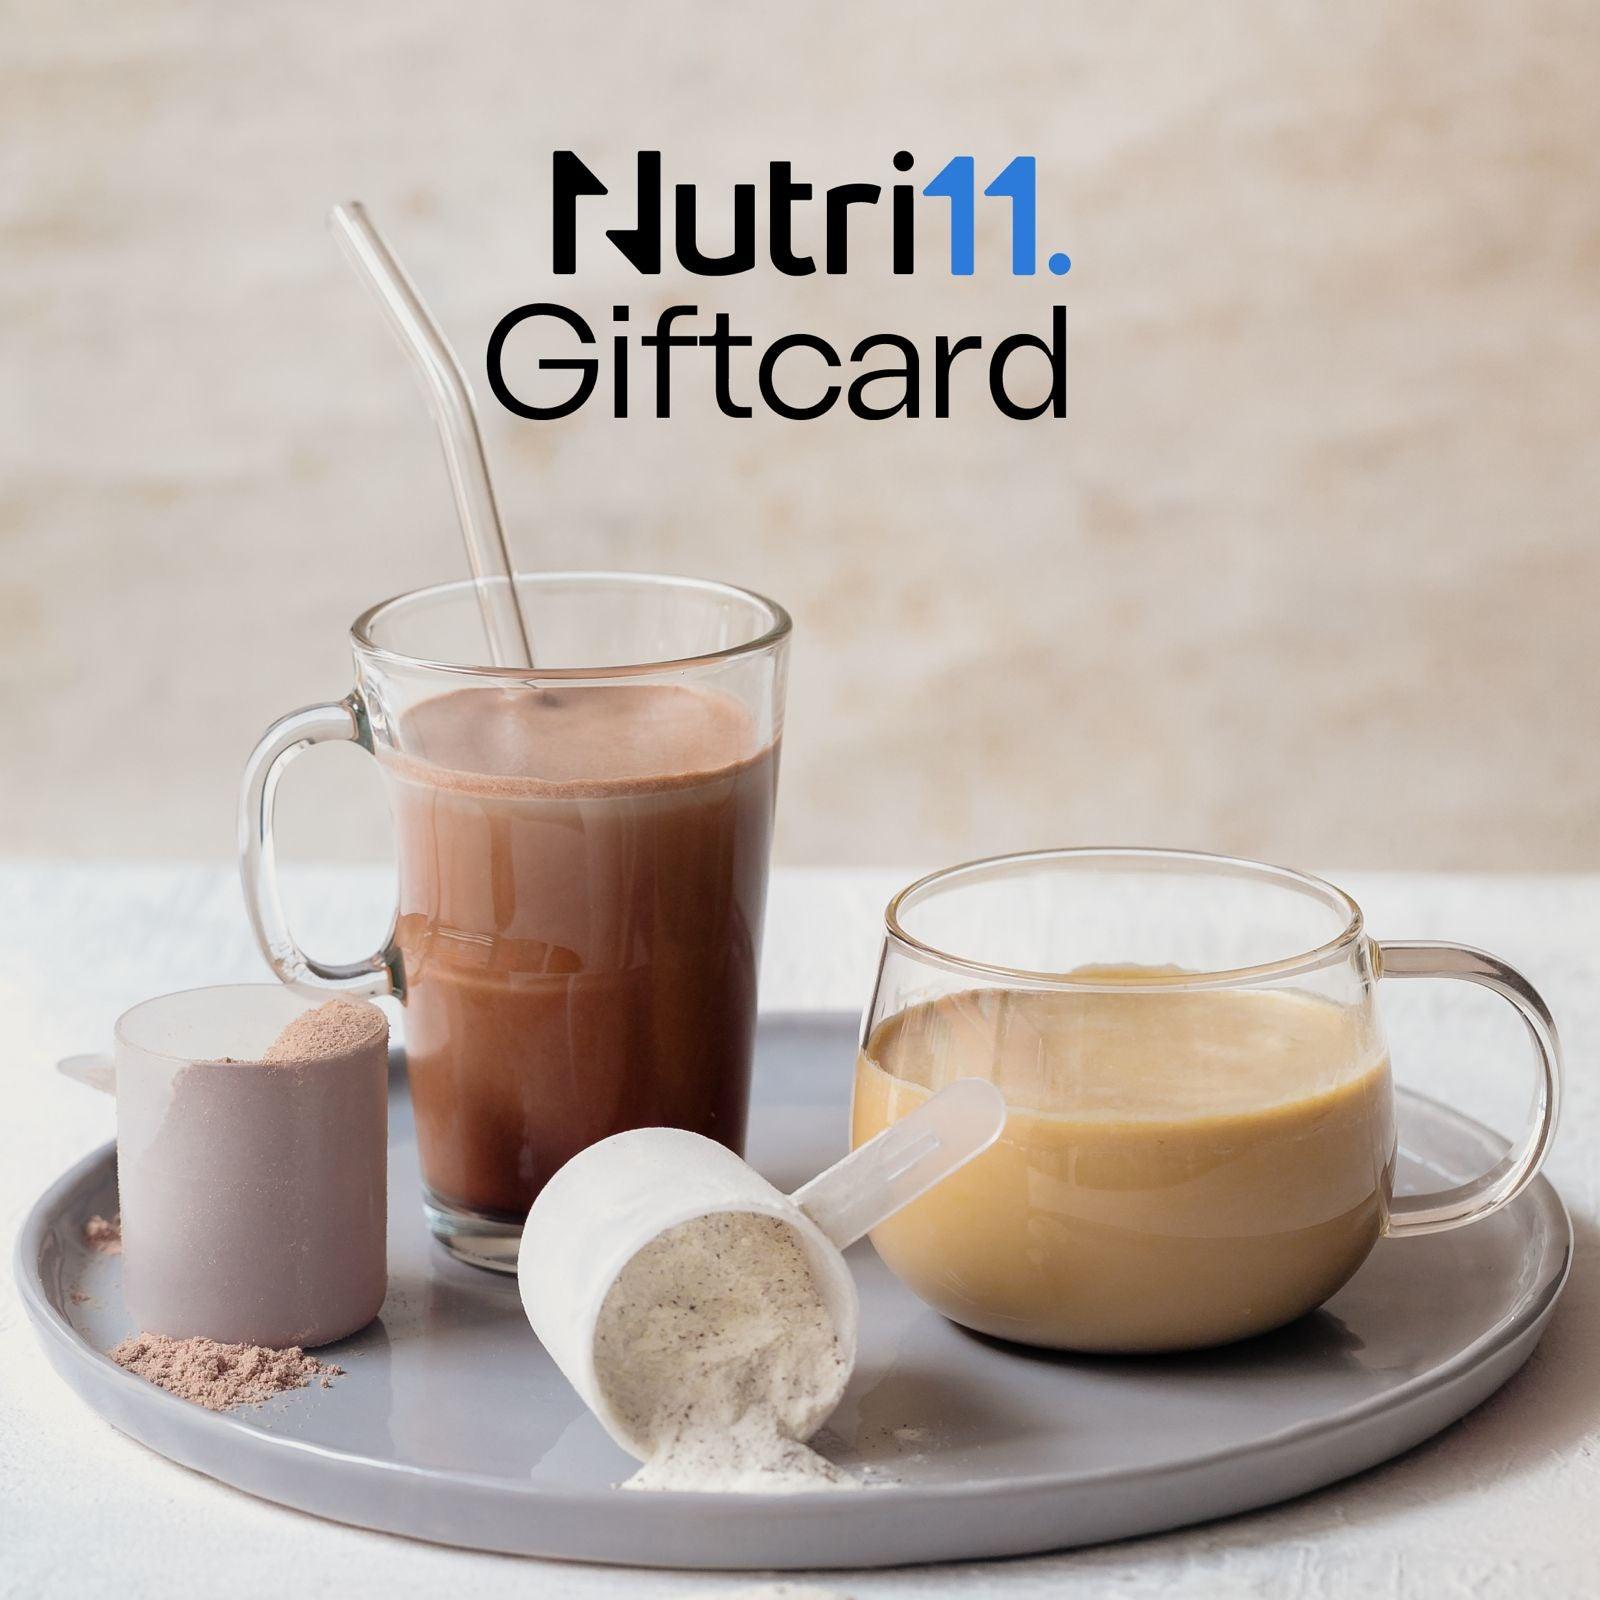 Nutri11 Digital Gift Card - Nutri11